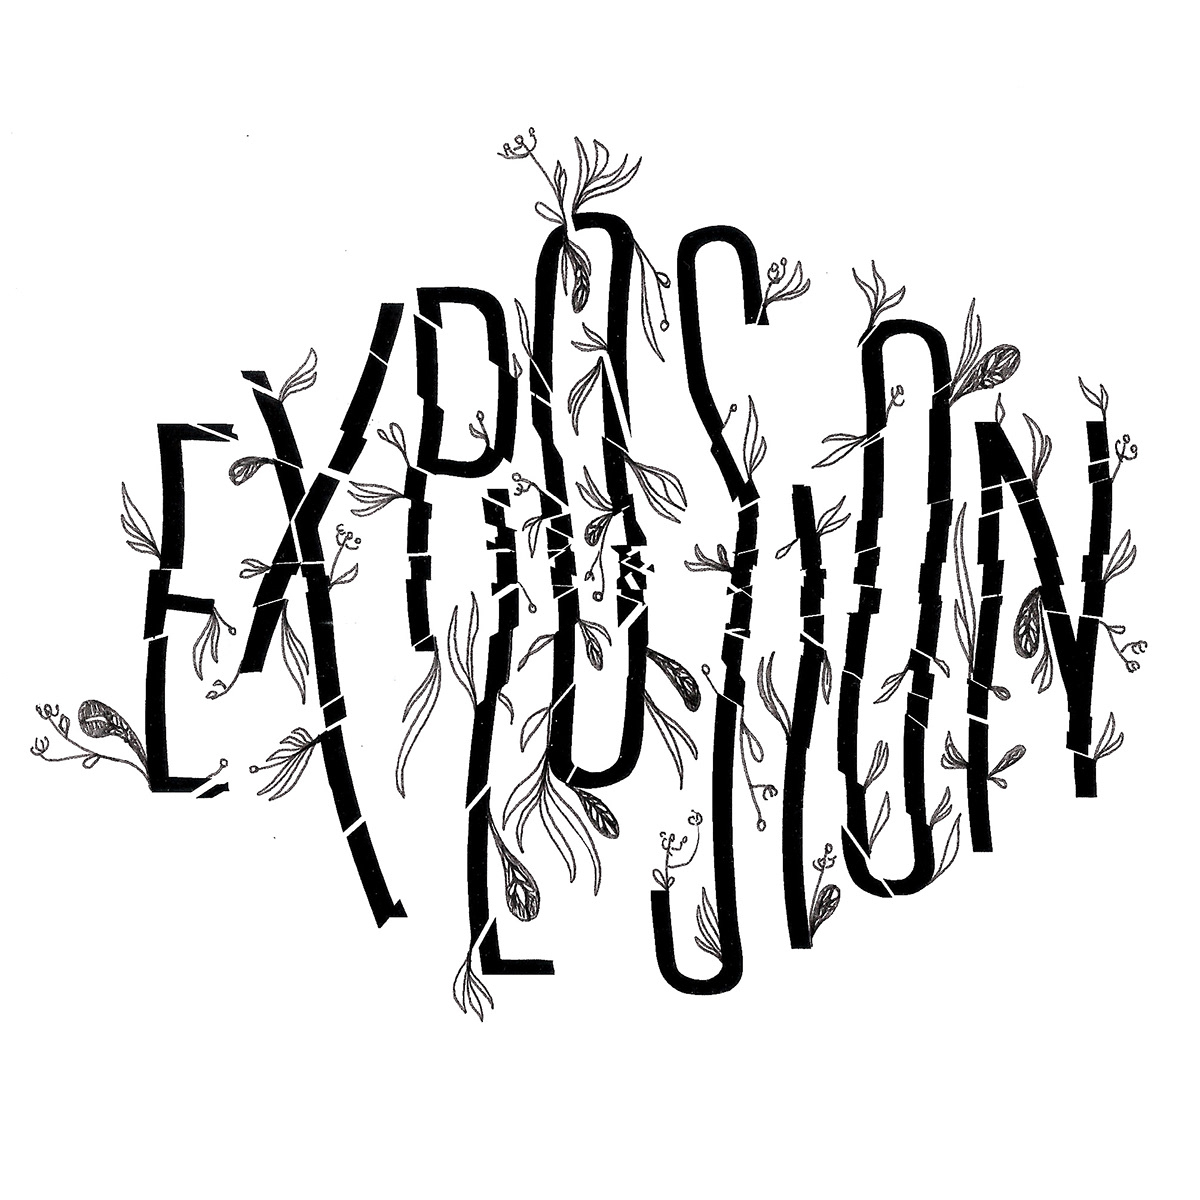 explosion typo album cover